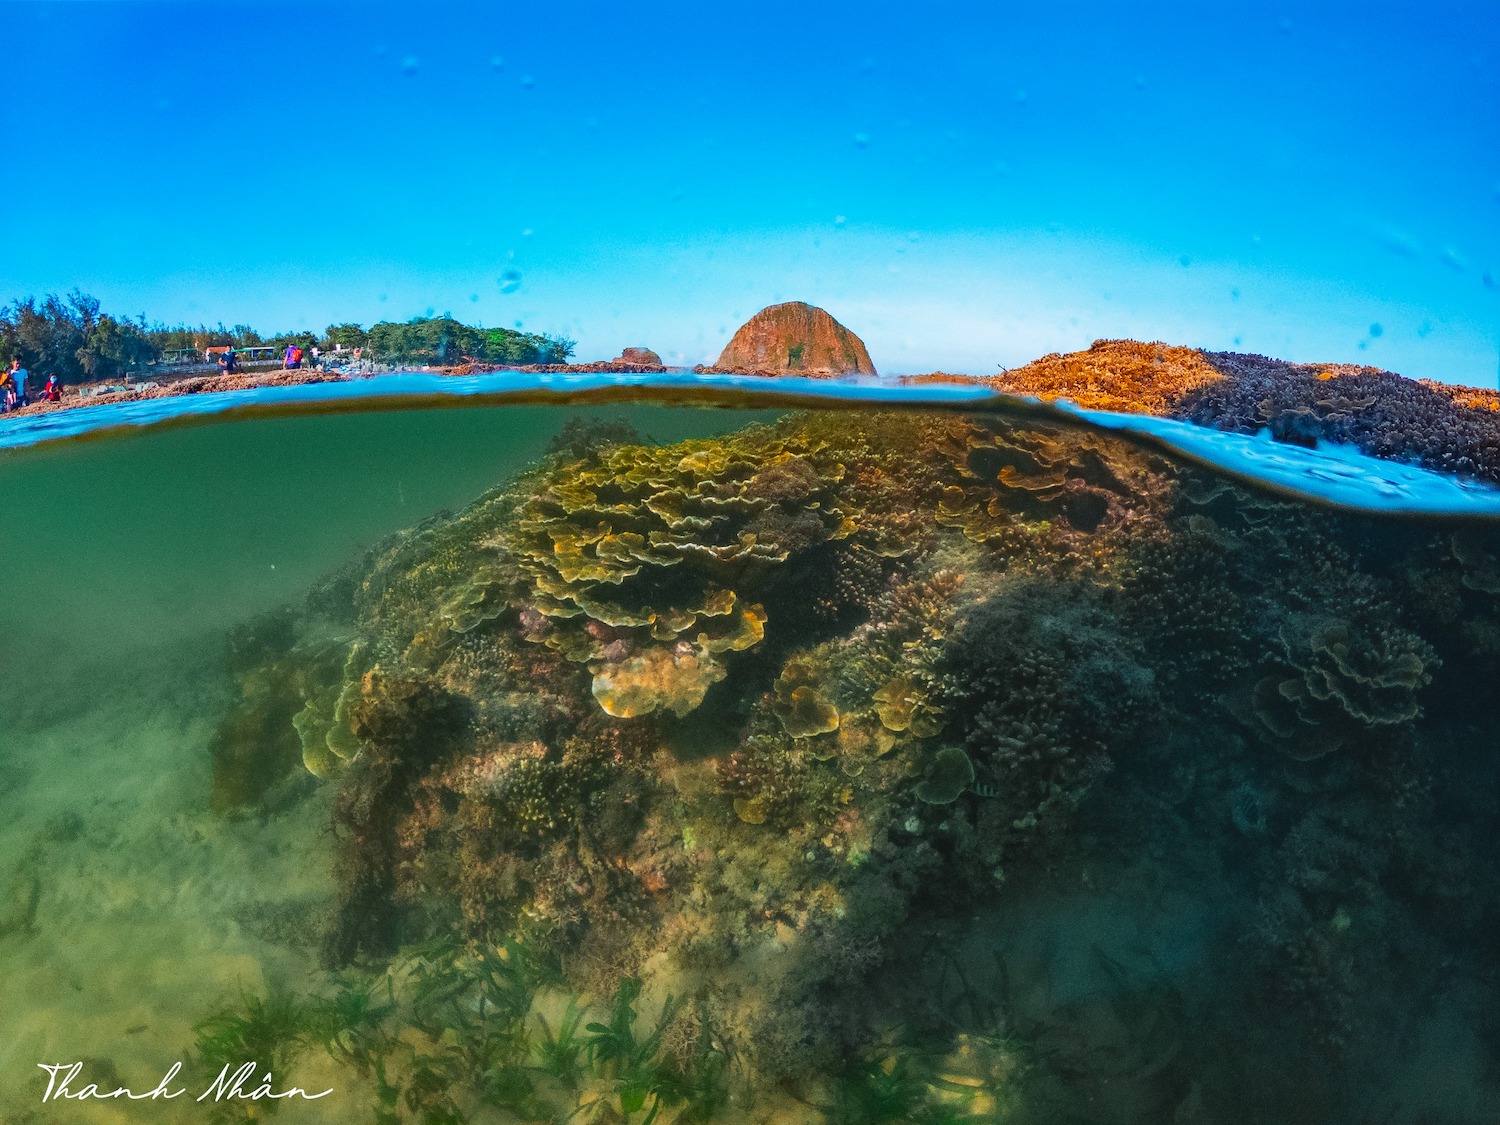 Phải cảm ơn bộ ảnh tuyệt vời của chàng trai 9x, giúp bạn ngắm san hô Phú Yên đẹp mê mẩn, lung linh sắc màu 3